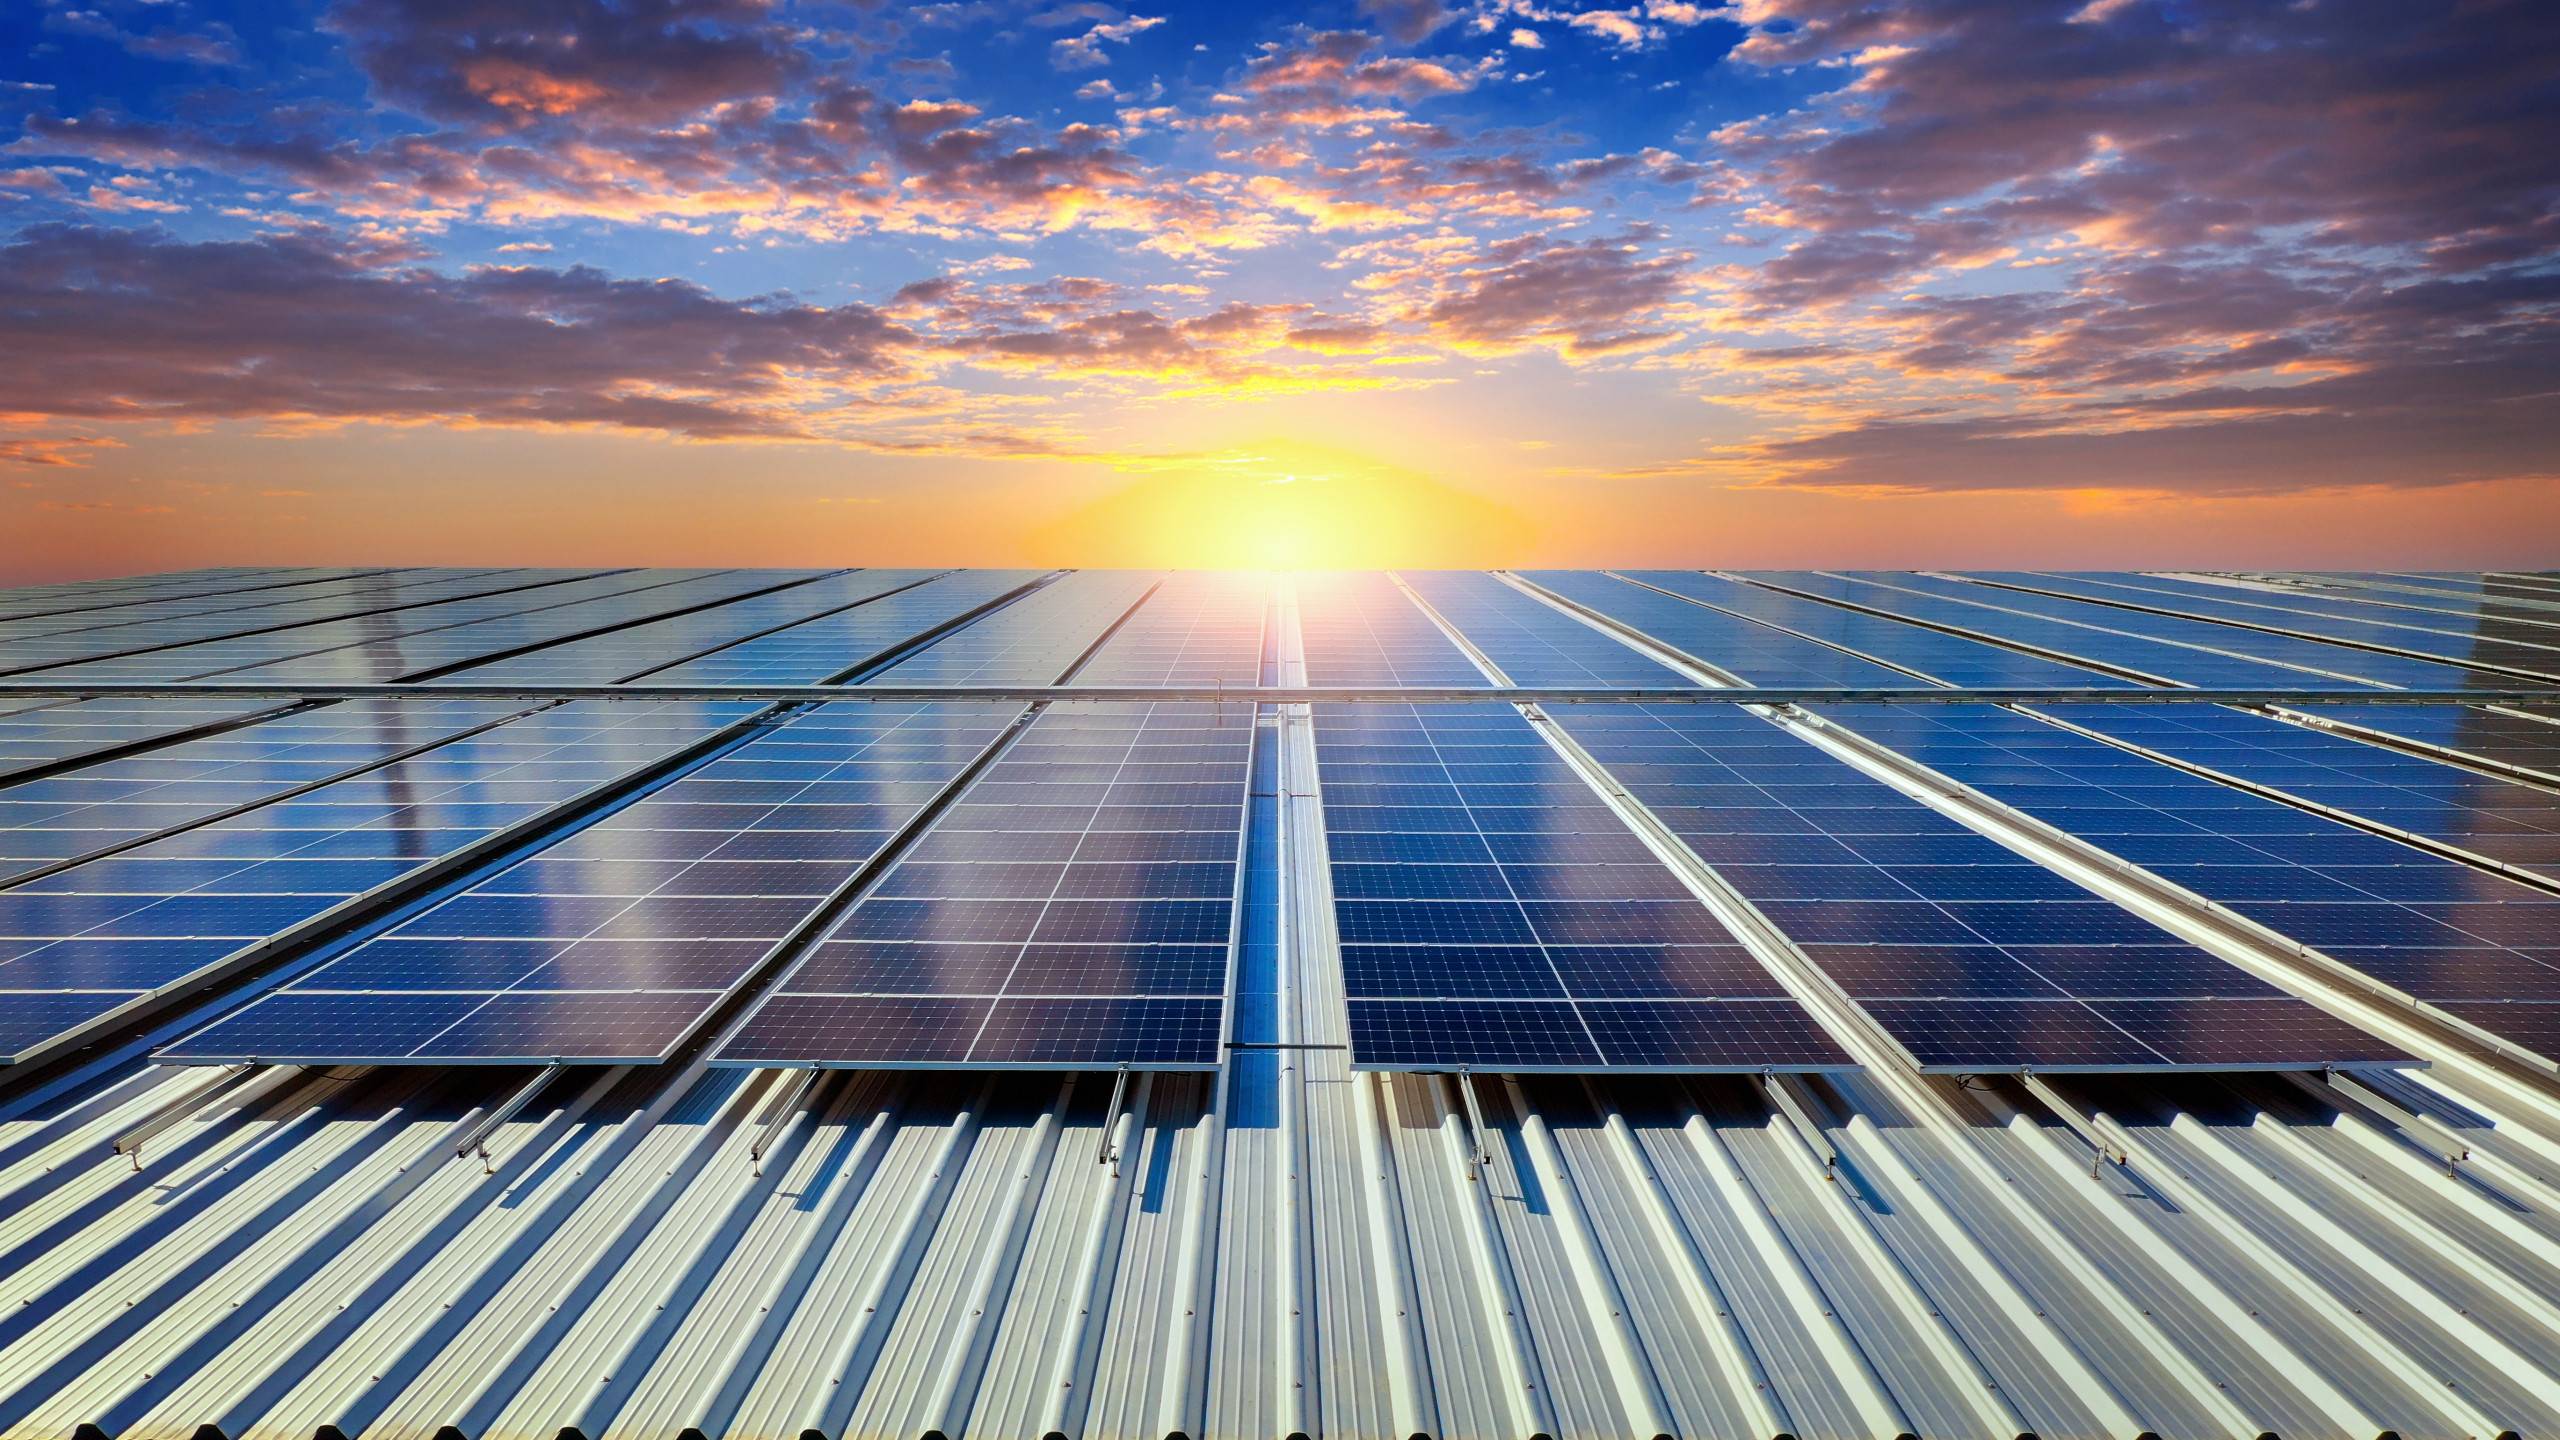 Solaire photovoltaique, installation panneaux photovoltaique